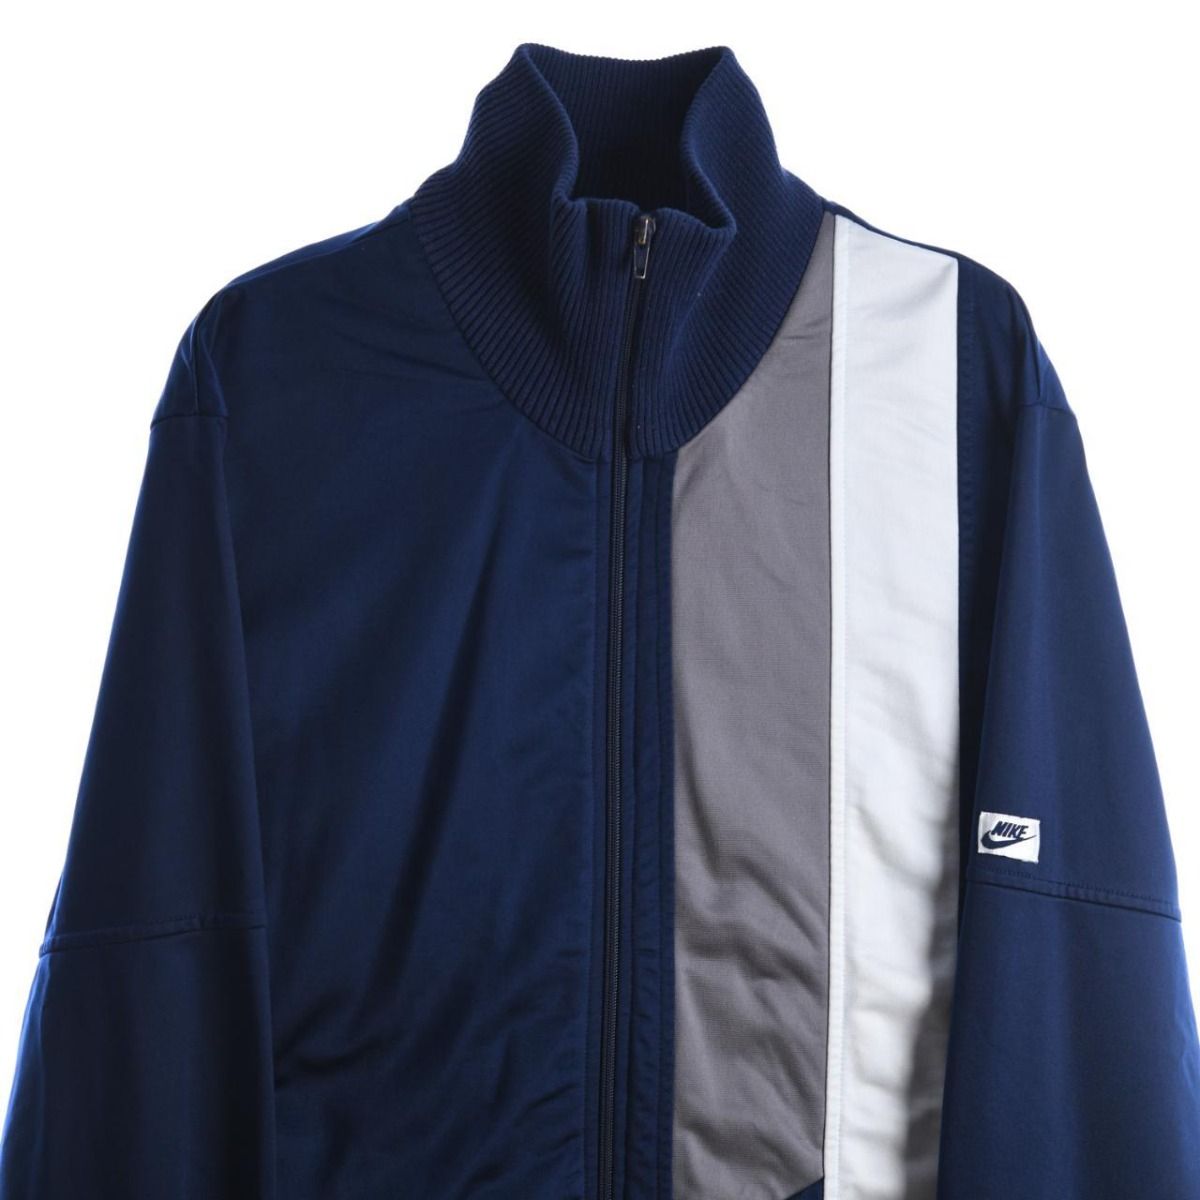 Nike 1990s Jacket